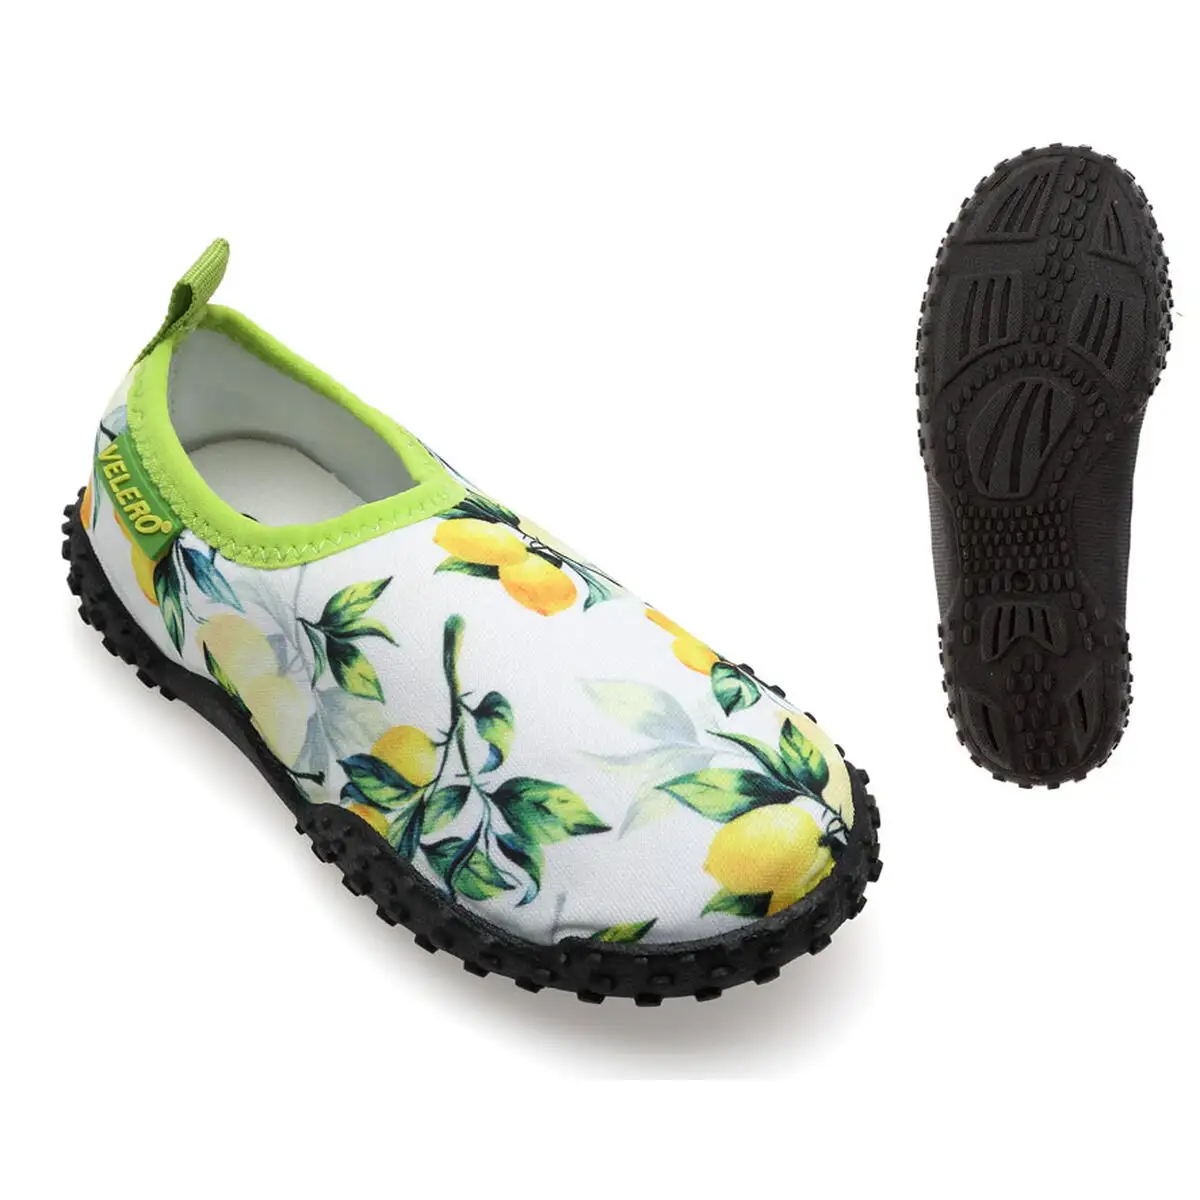 Chaussures aquatiques pour enfants lemon vert clair_7774. Bienvenue chez DIAYTAR SENEGAL - Où Chaque Objet a sa Propre Histoire. Découvrez notre sélection soigneusement choisie et choisissez des produits qui racontent le patrimoine sénégalais.